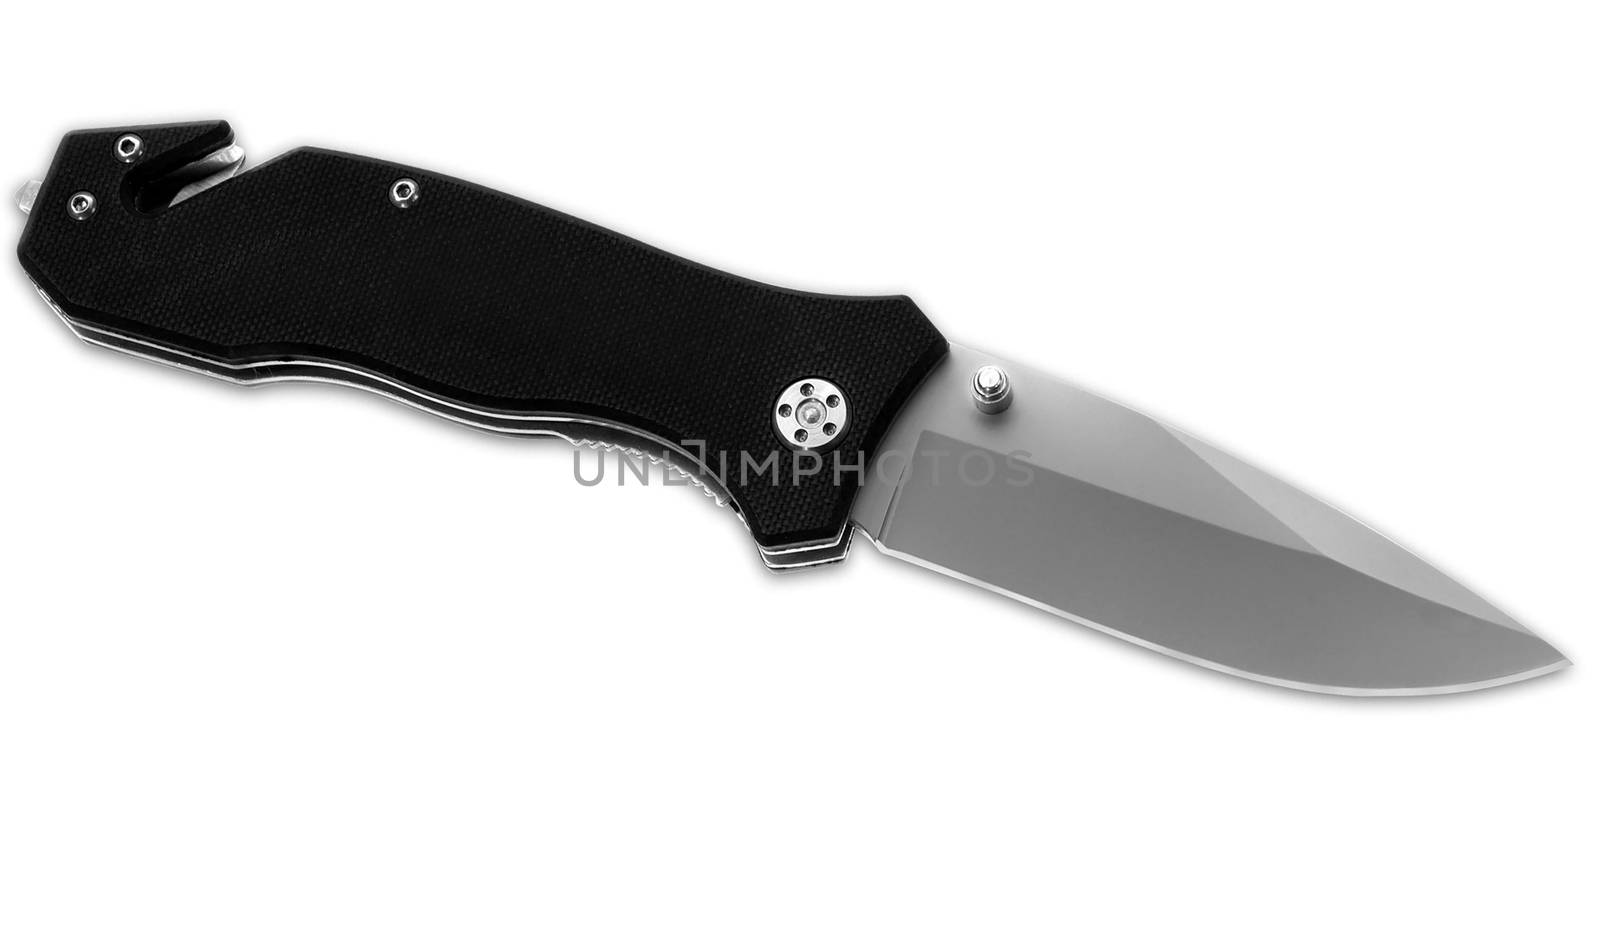 jackknife foldable steel pocket knife isolated over the white background